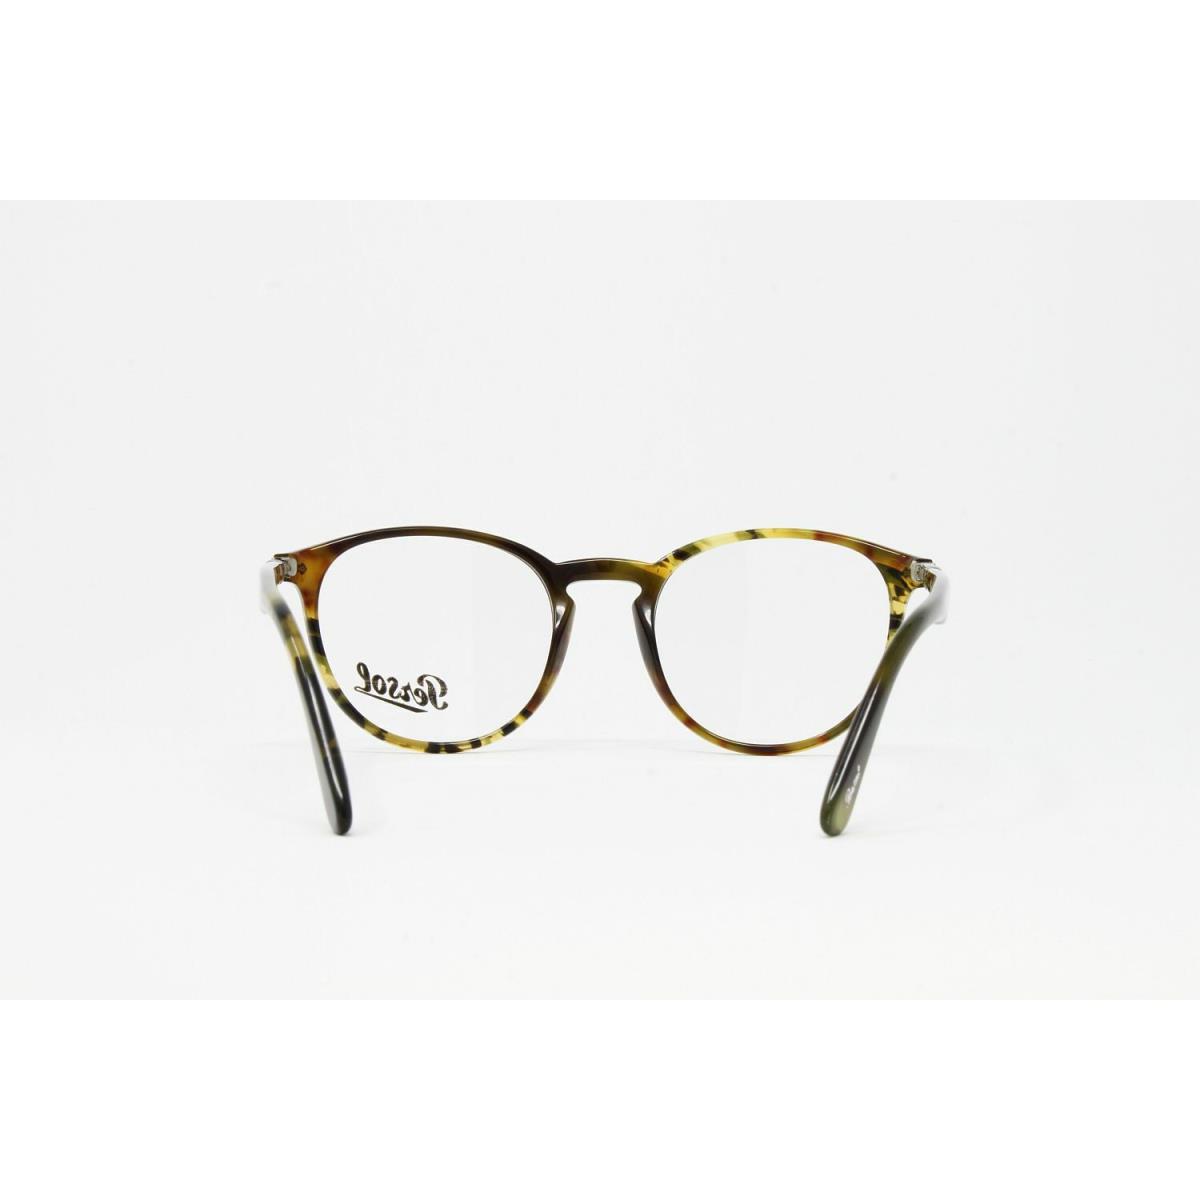 Persol eyeglasses Color - Brown Frame 2